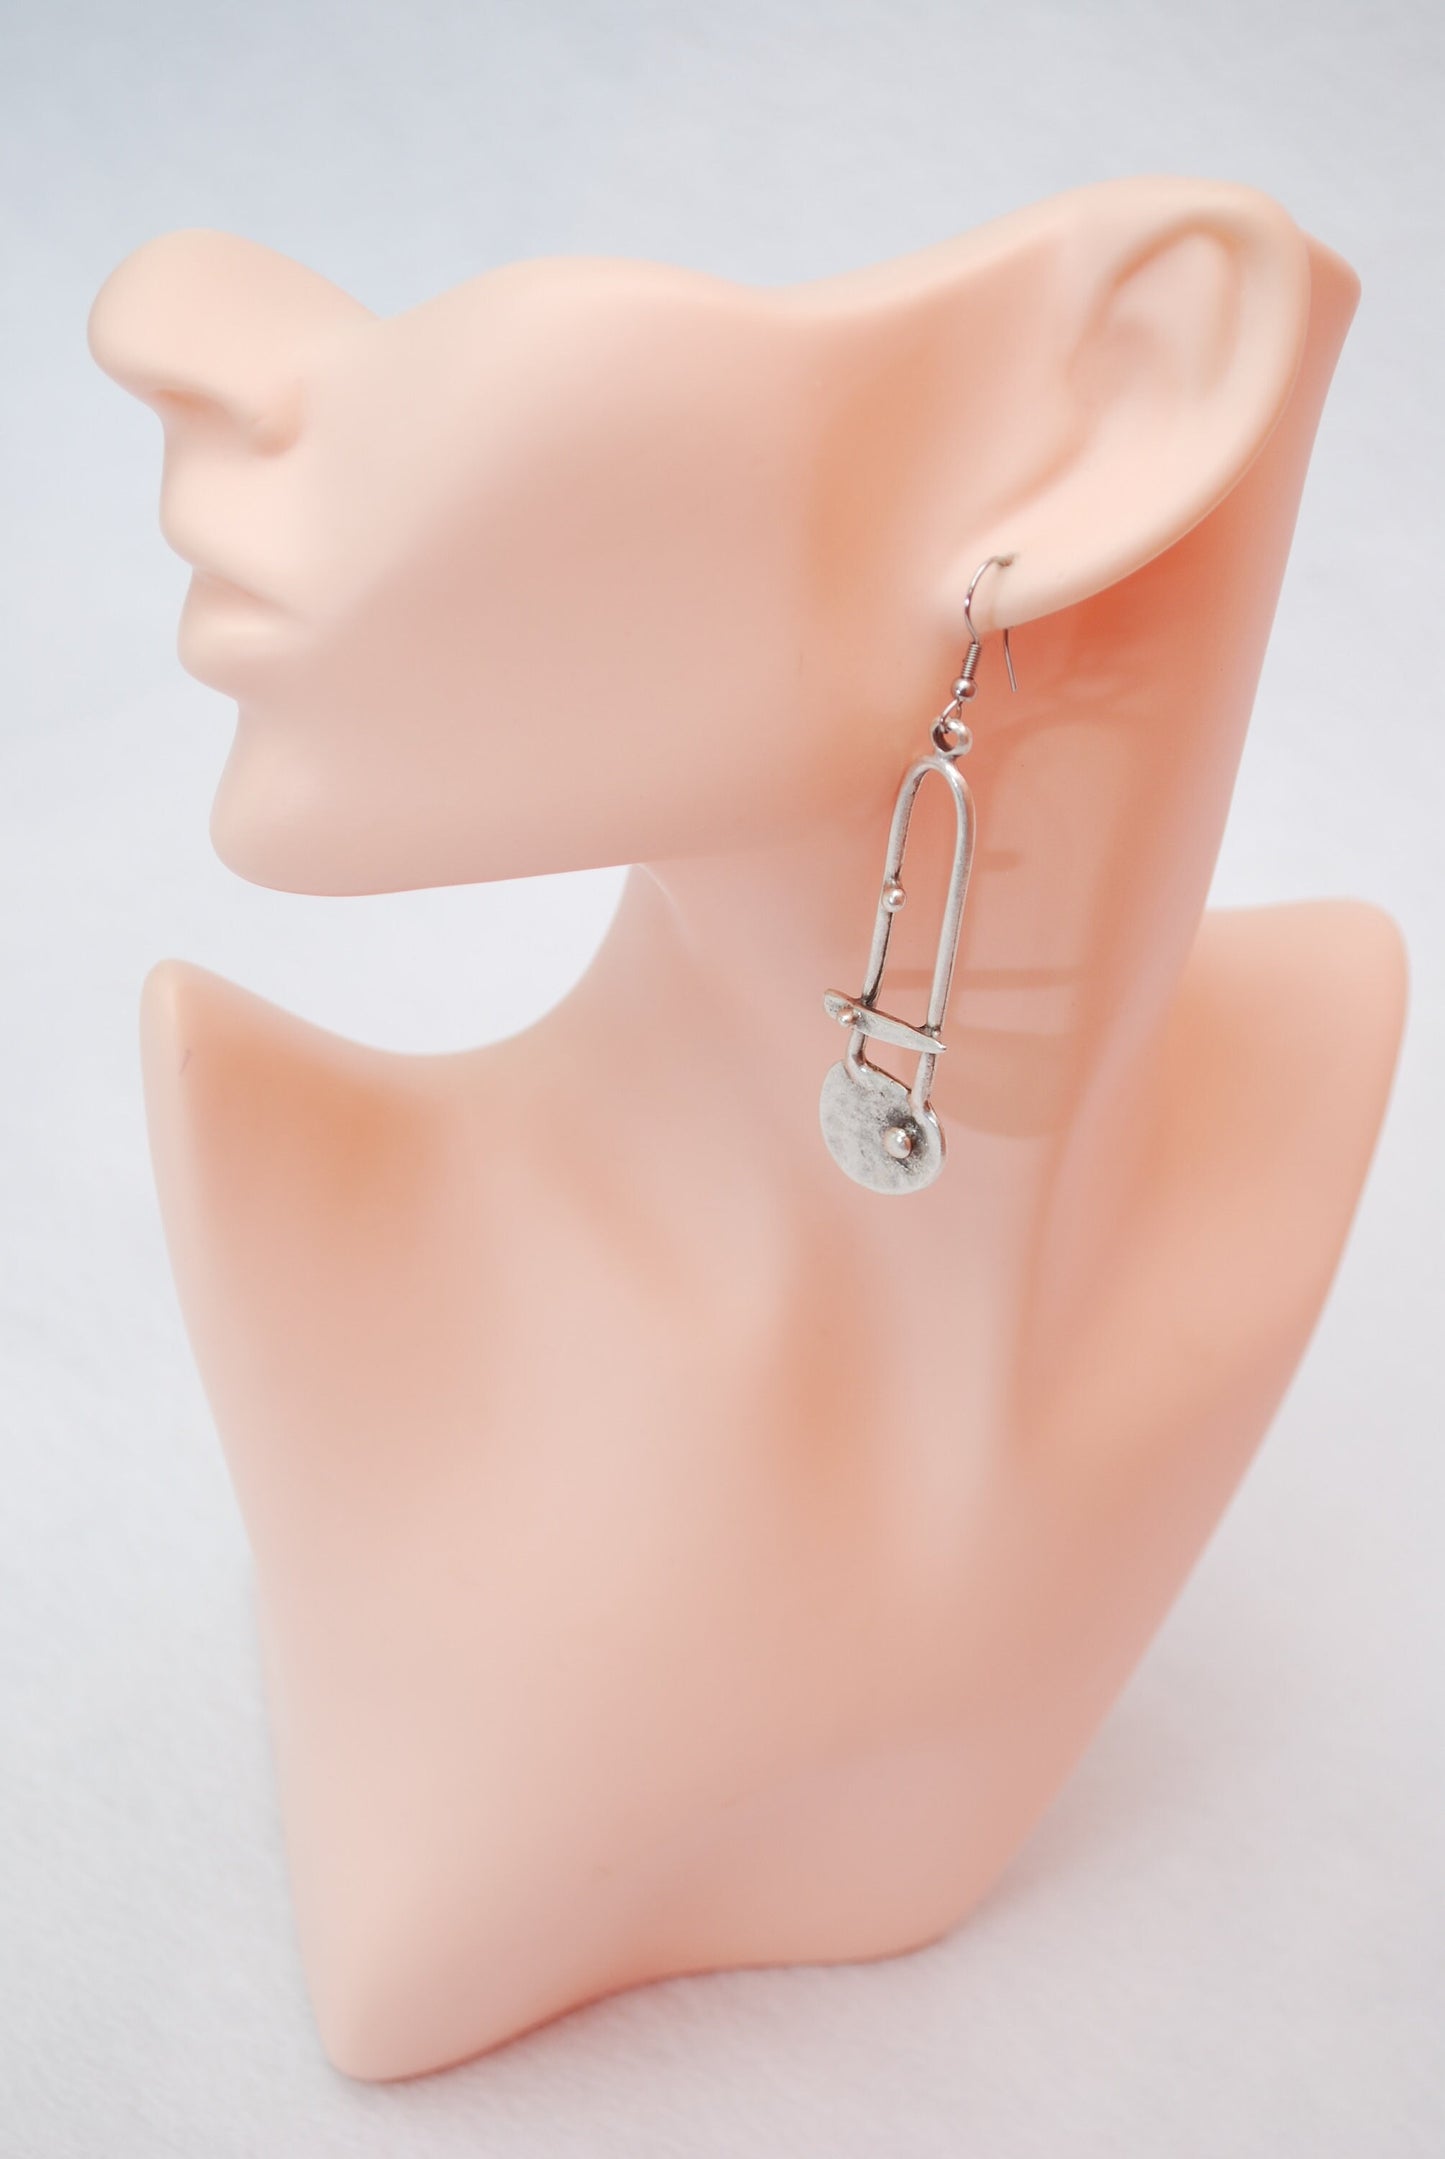 Abstract shape silver earrings, tribal, boho earrings, free style, uniqe design, lightweight earrings